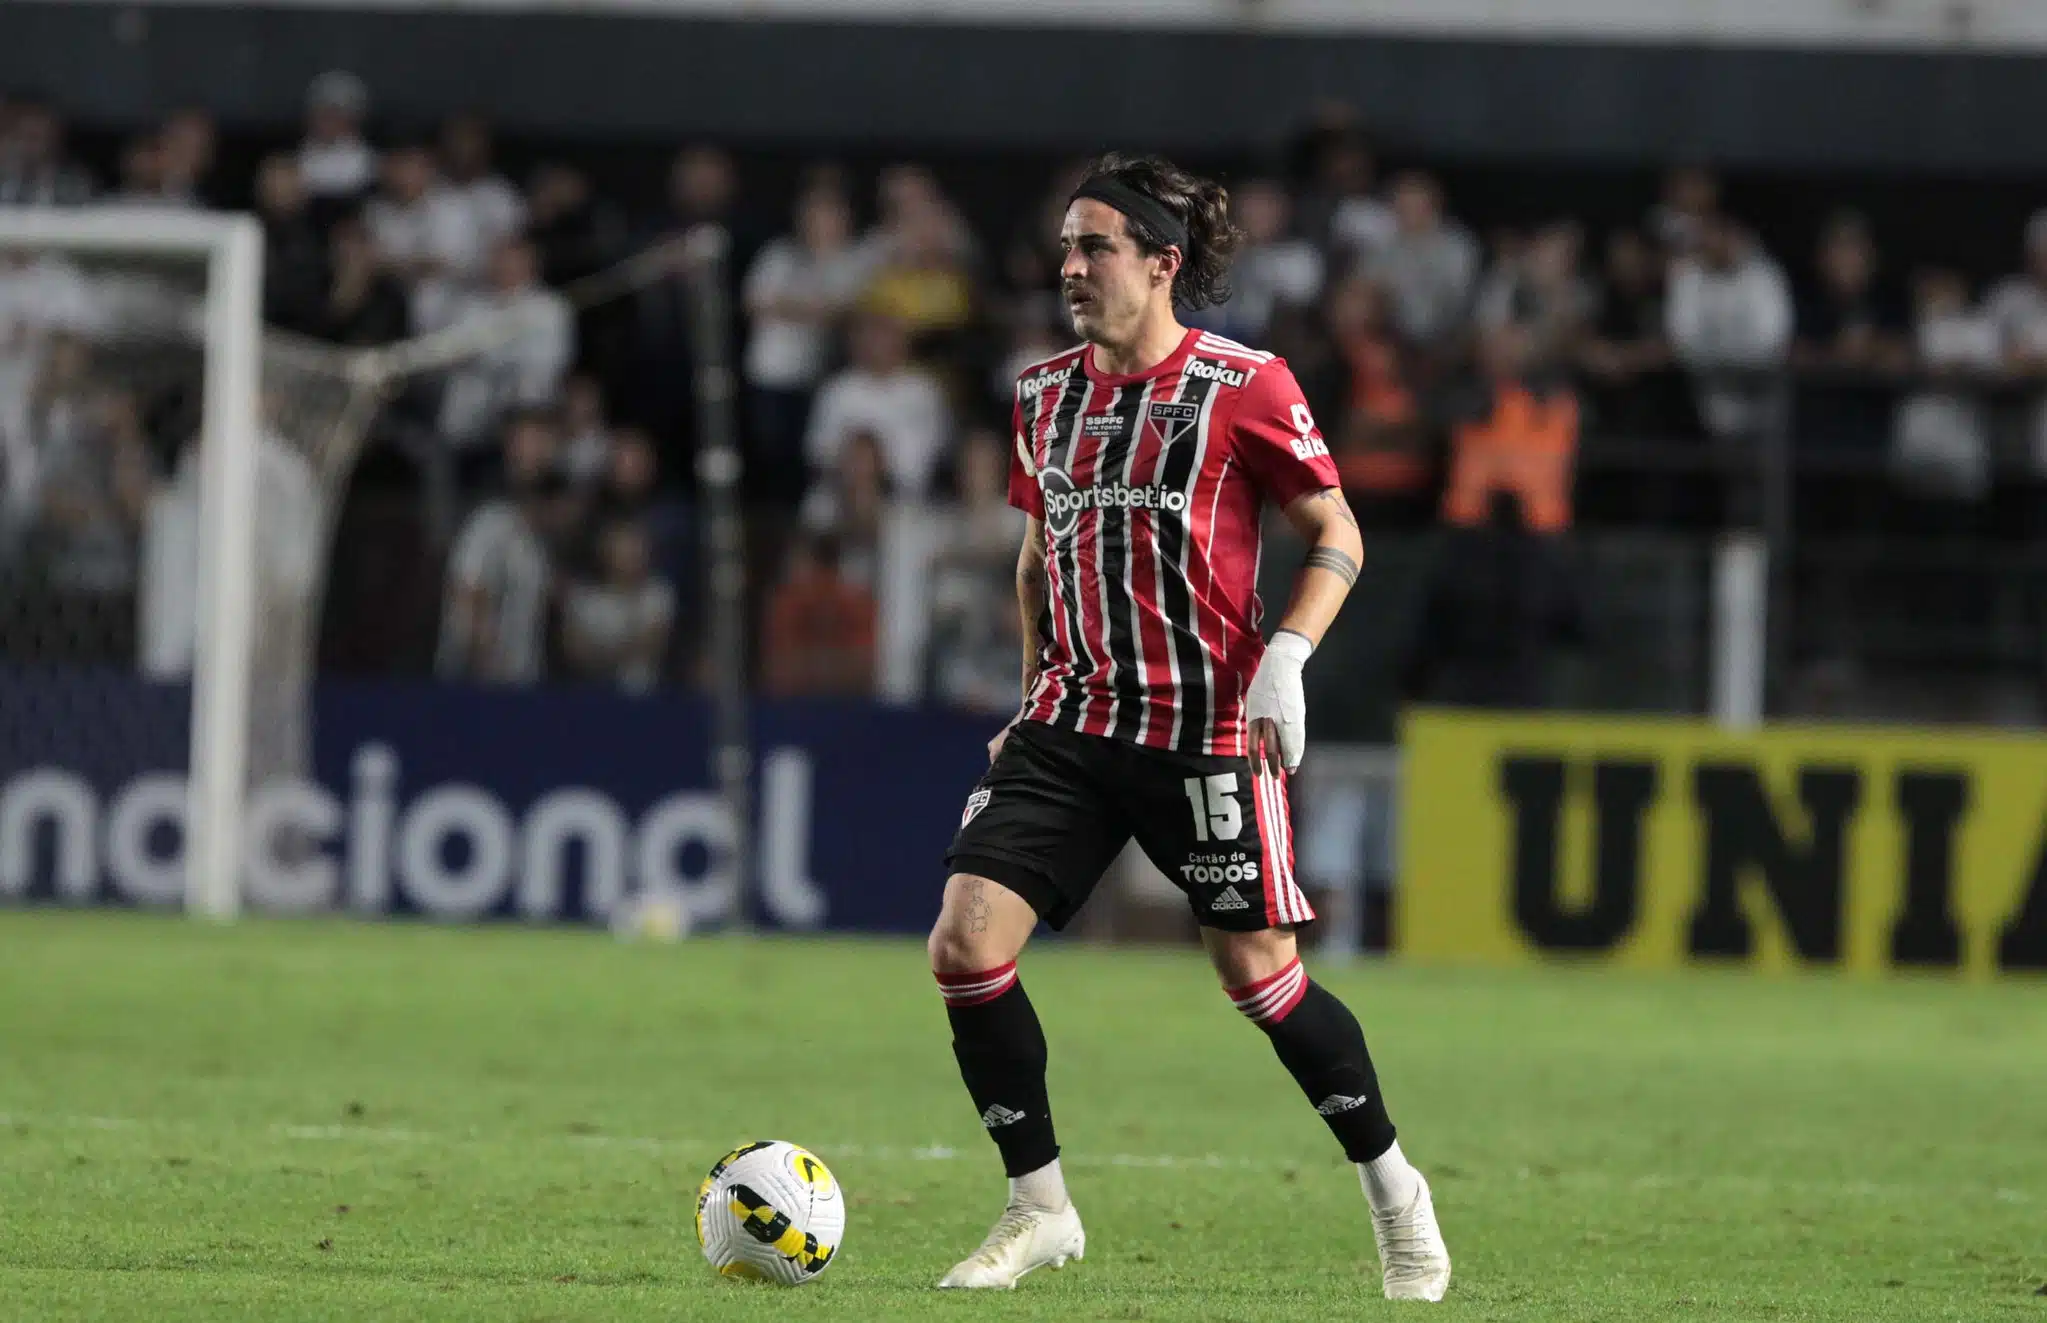 São Paulo deve ter mais um importante desfalque contra o Flamengo